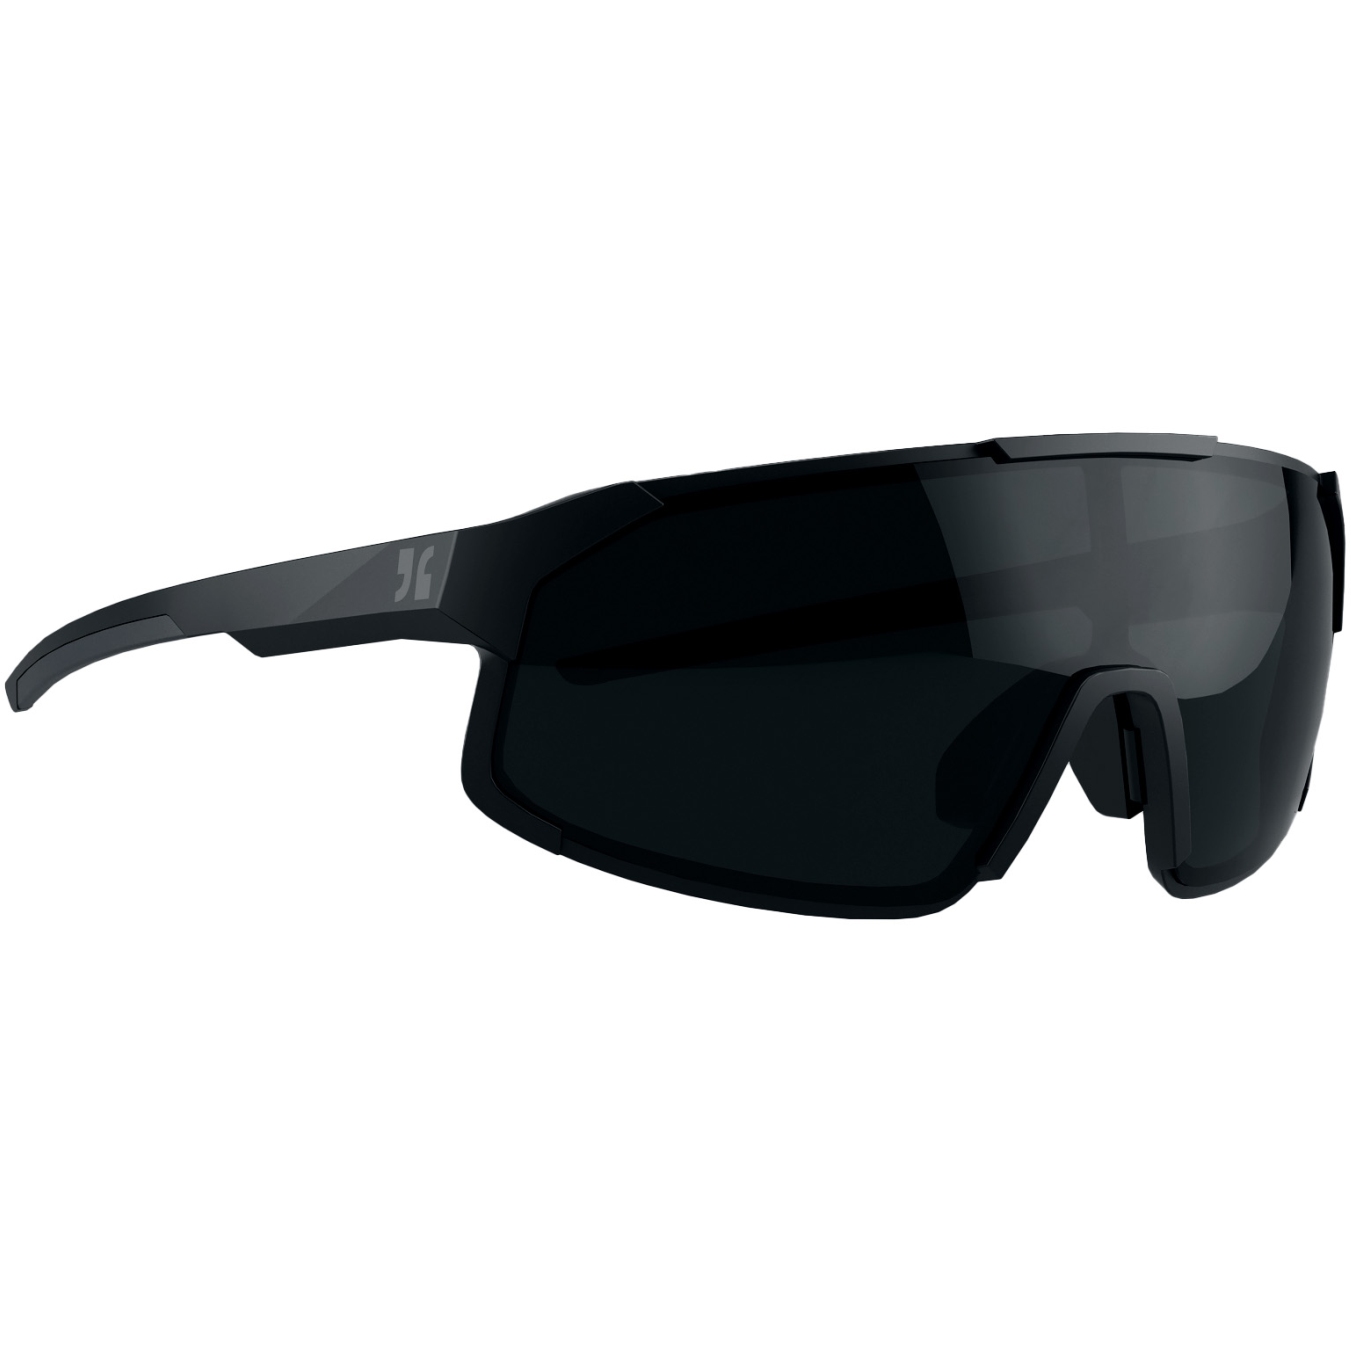 Produktbild von Dirtlej Specs 02 Bike Sonnenbrille - Black - schwarz